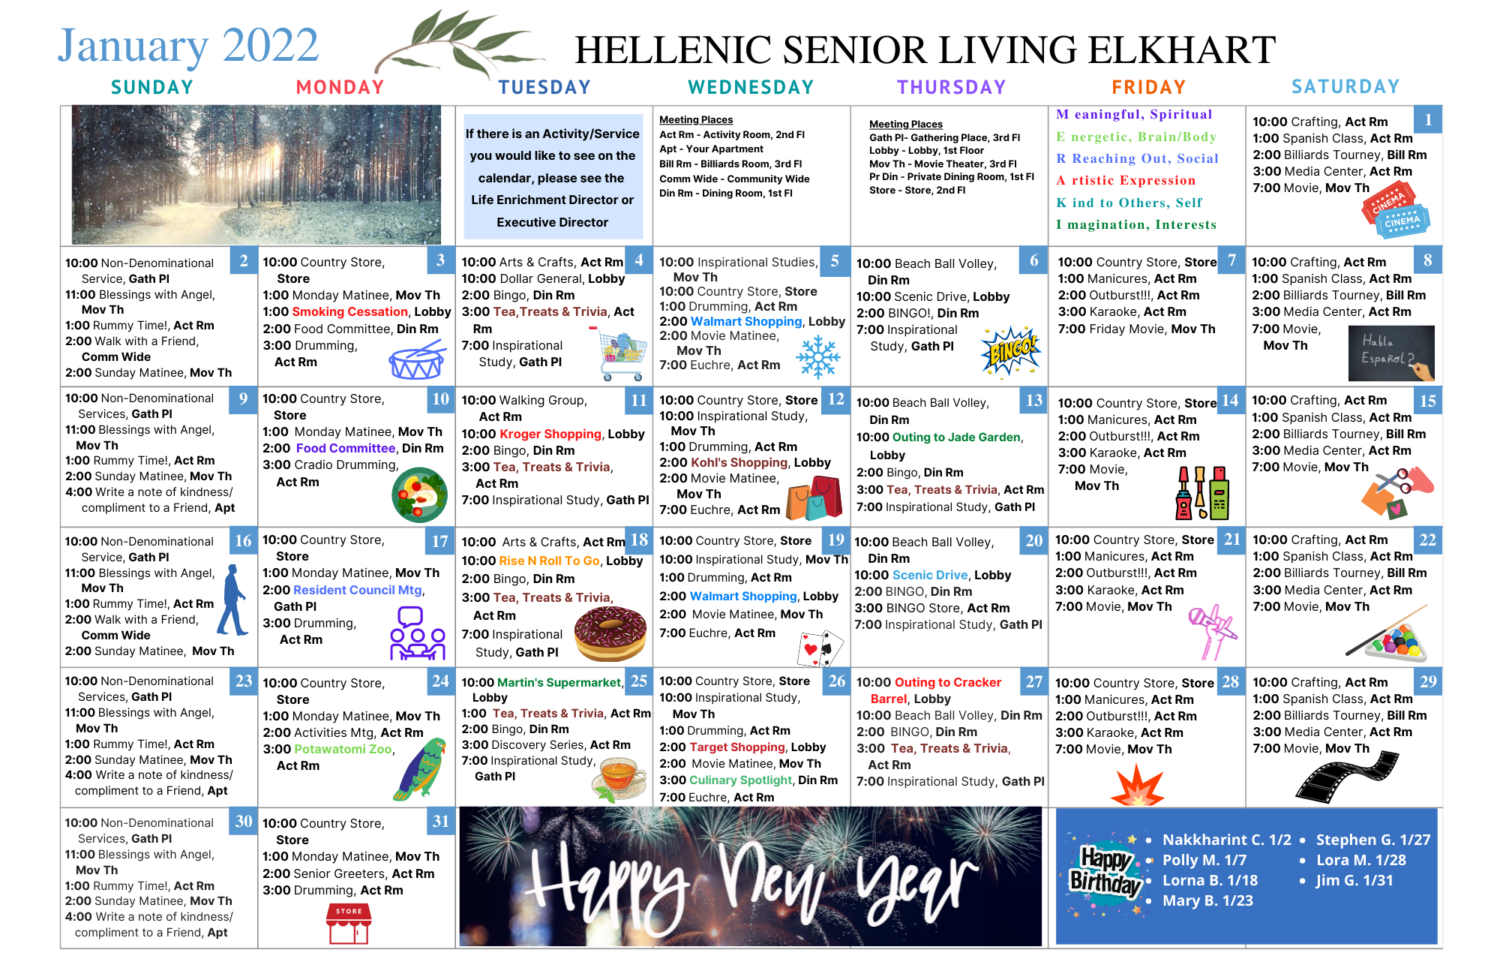 Monthly Activity Calendar for January 2022 for residents at Hellenic Senior Living Elkhart